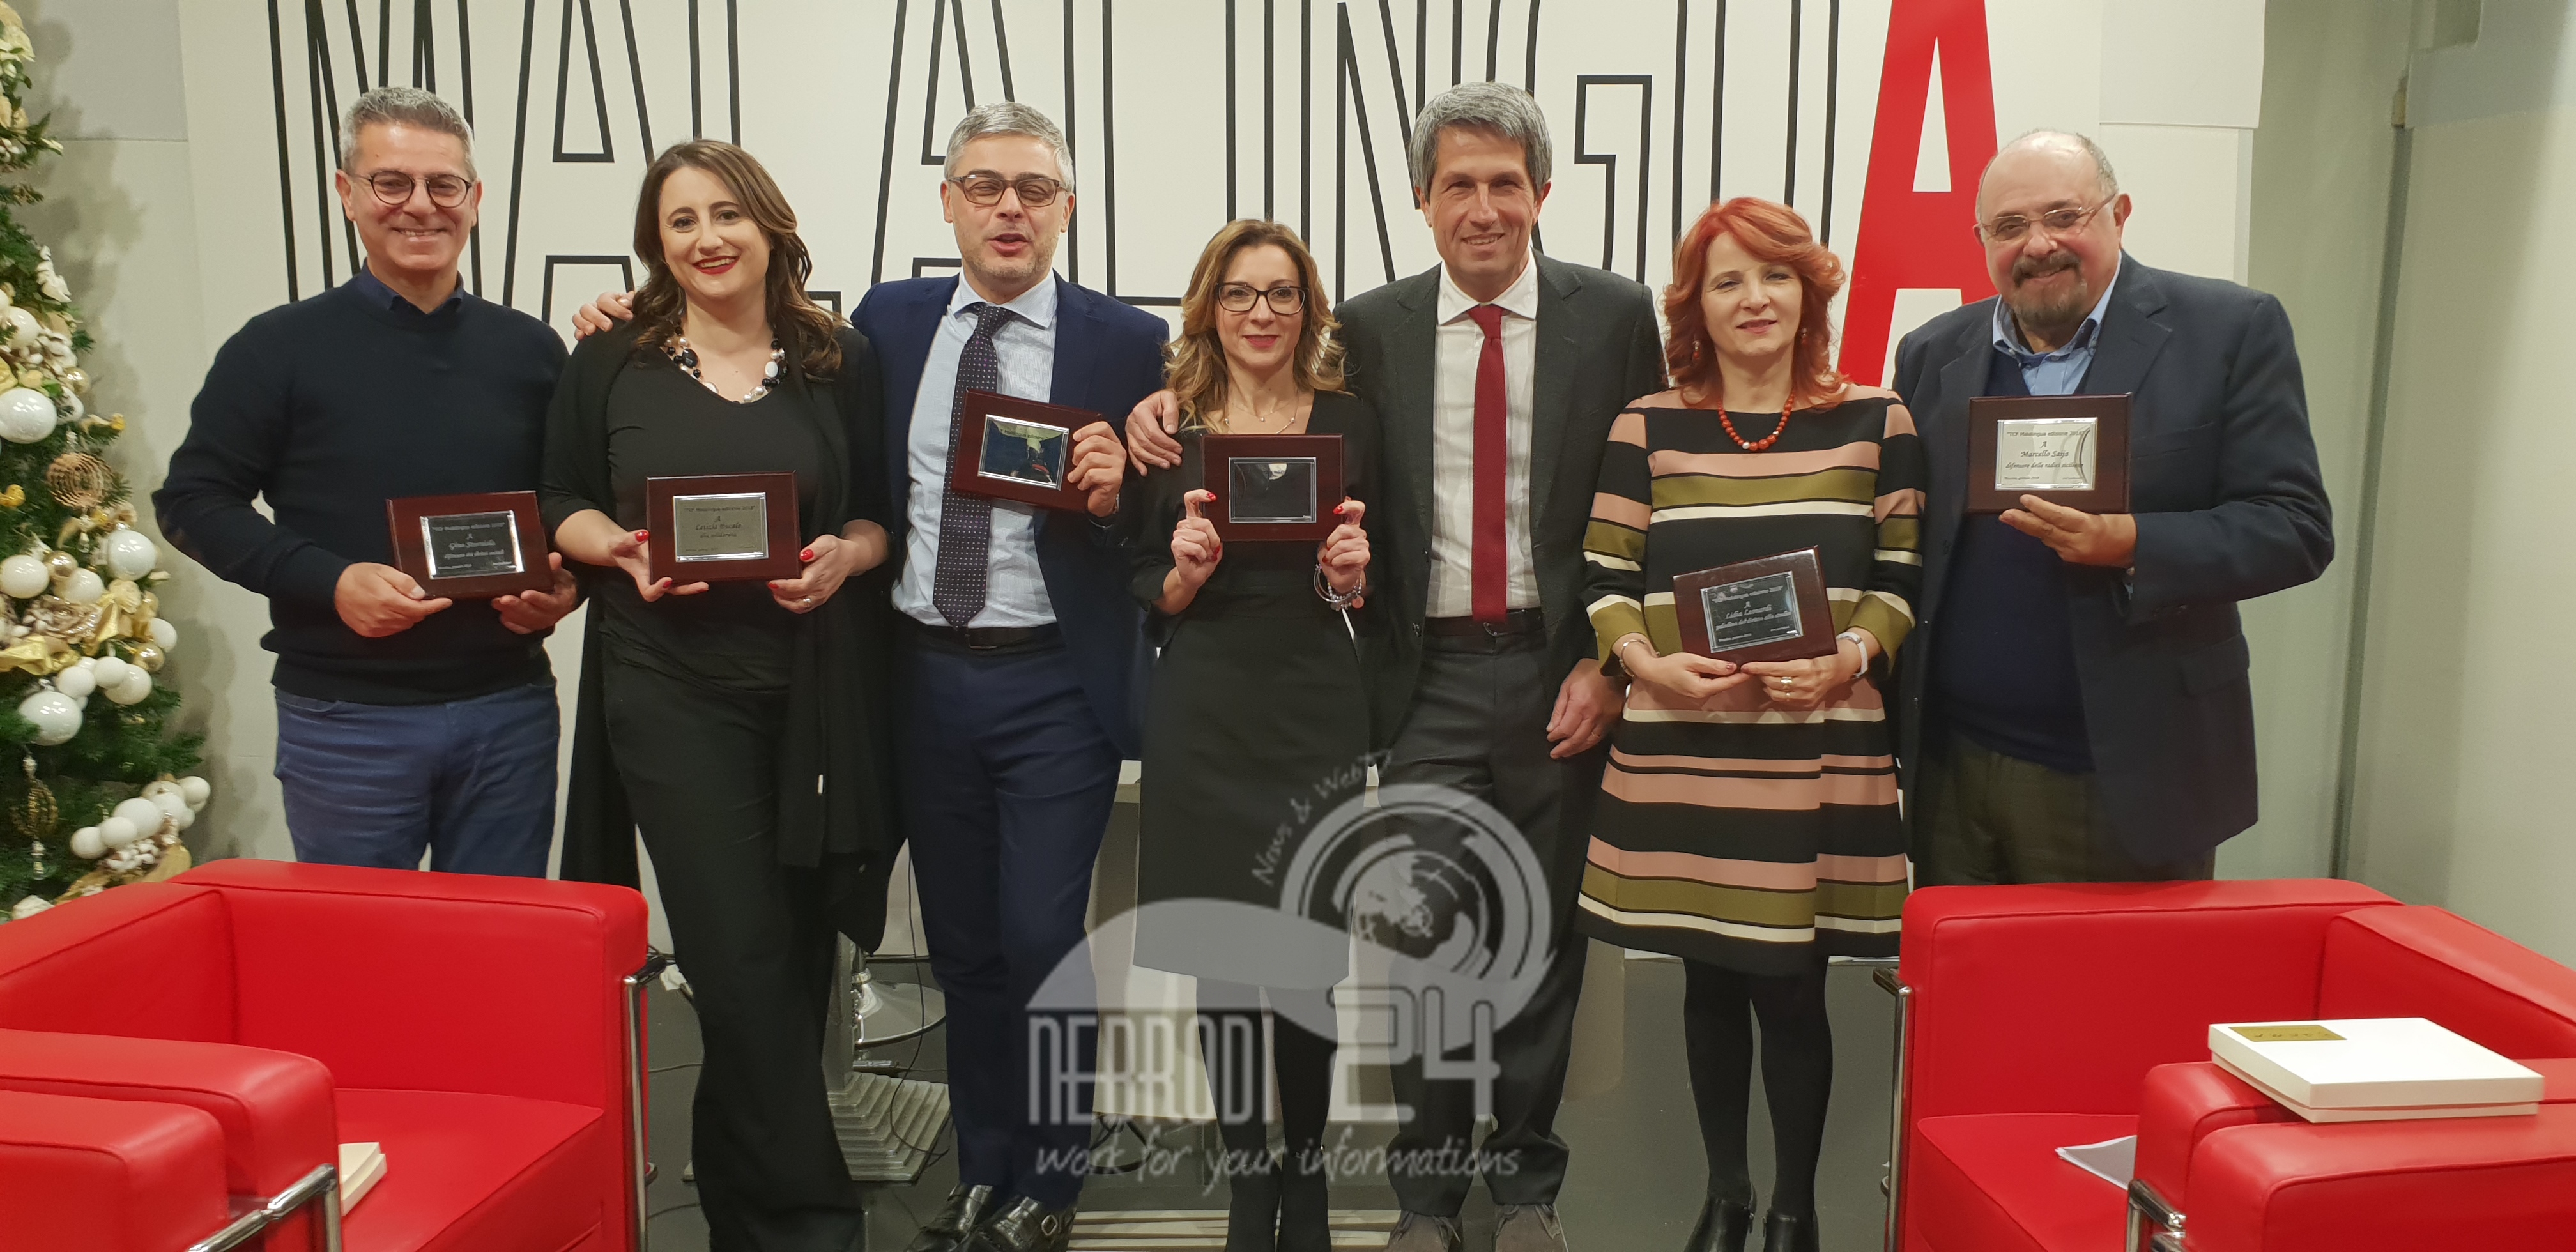 Messina – Assegnati i premi Malalingua 2018. Tra i premiati Rossana Franzone, per l’impegno rivolto agli ultimi e Idris, per lui il riconoscimento “messaggero di pace”